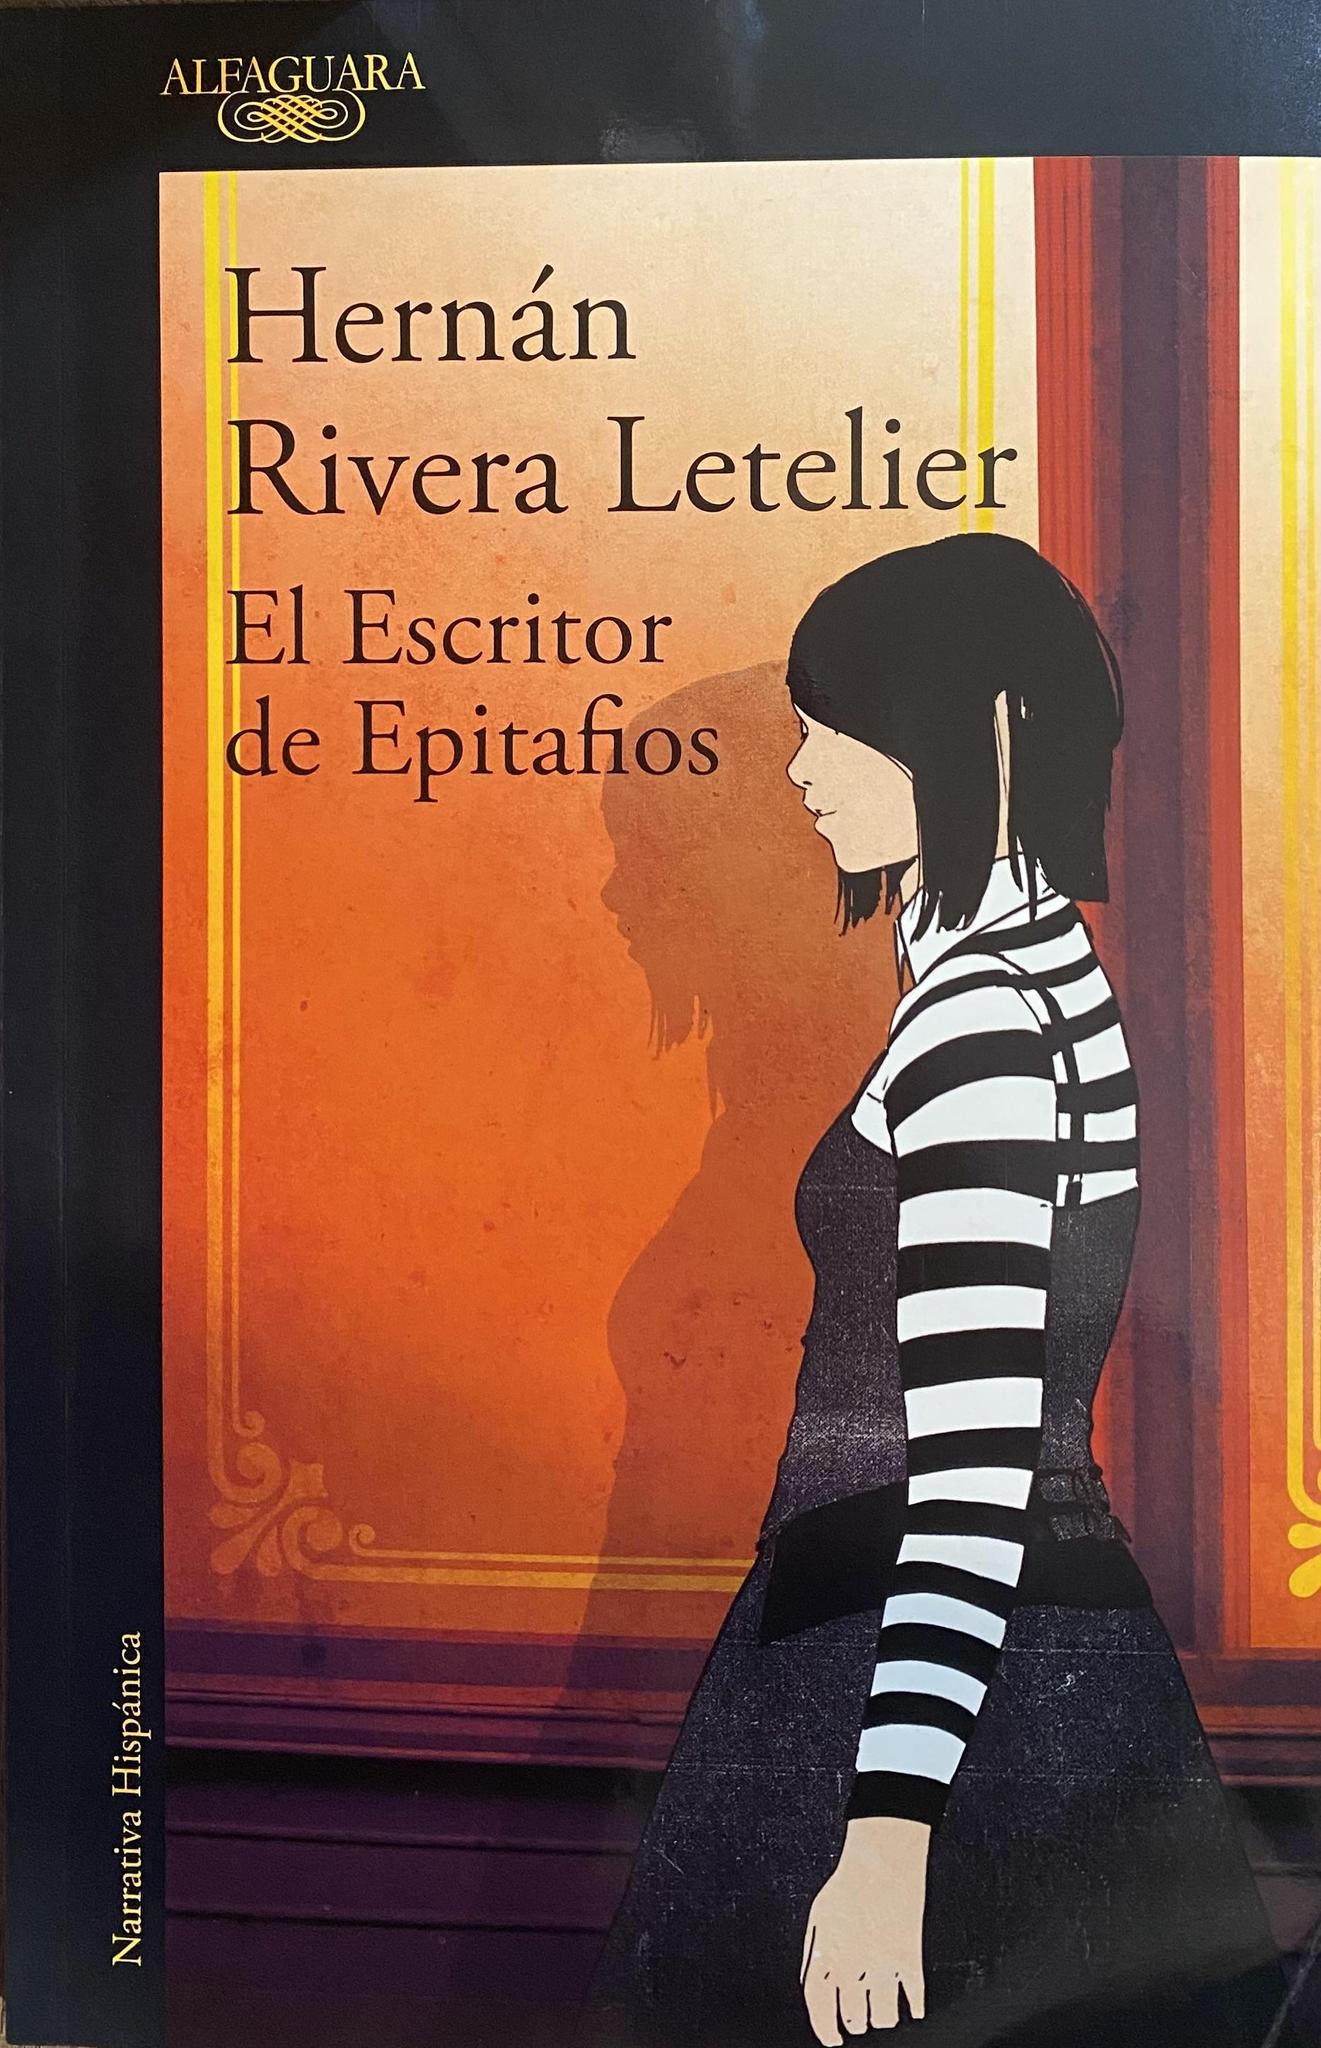 El Escritor de Epitafios - Hernan Rivera Letelier